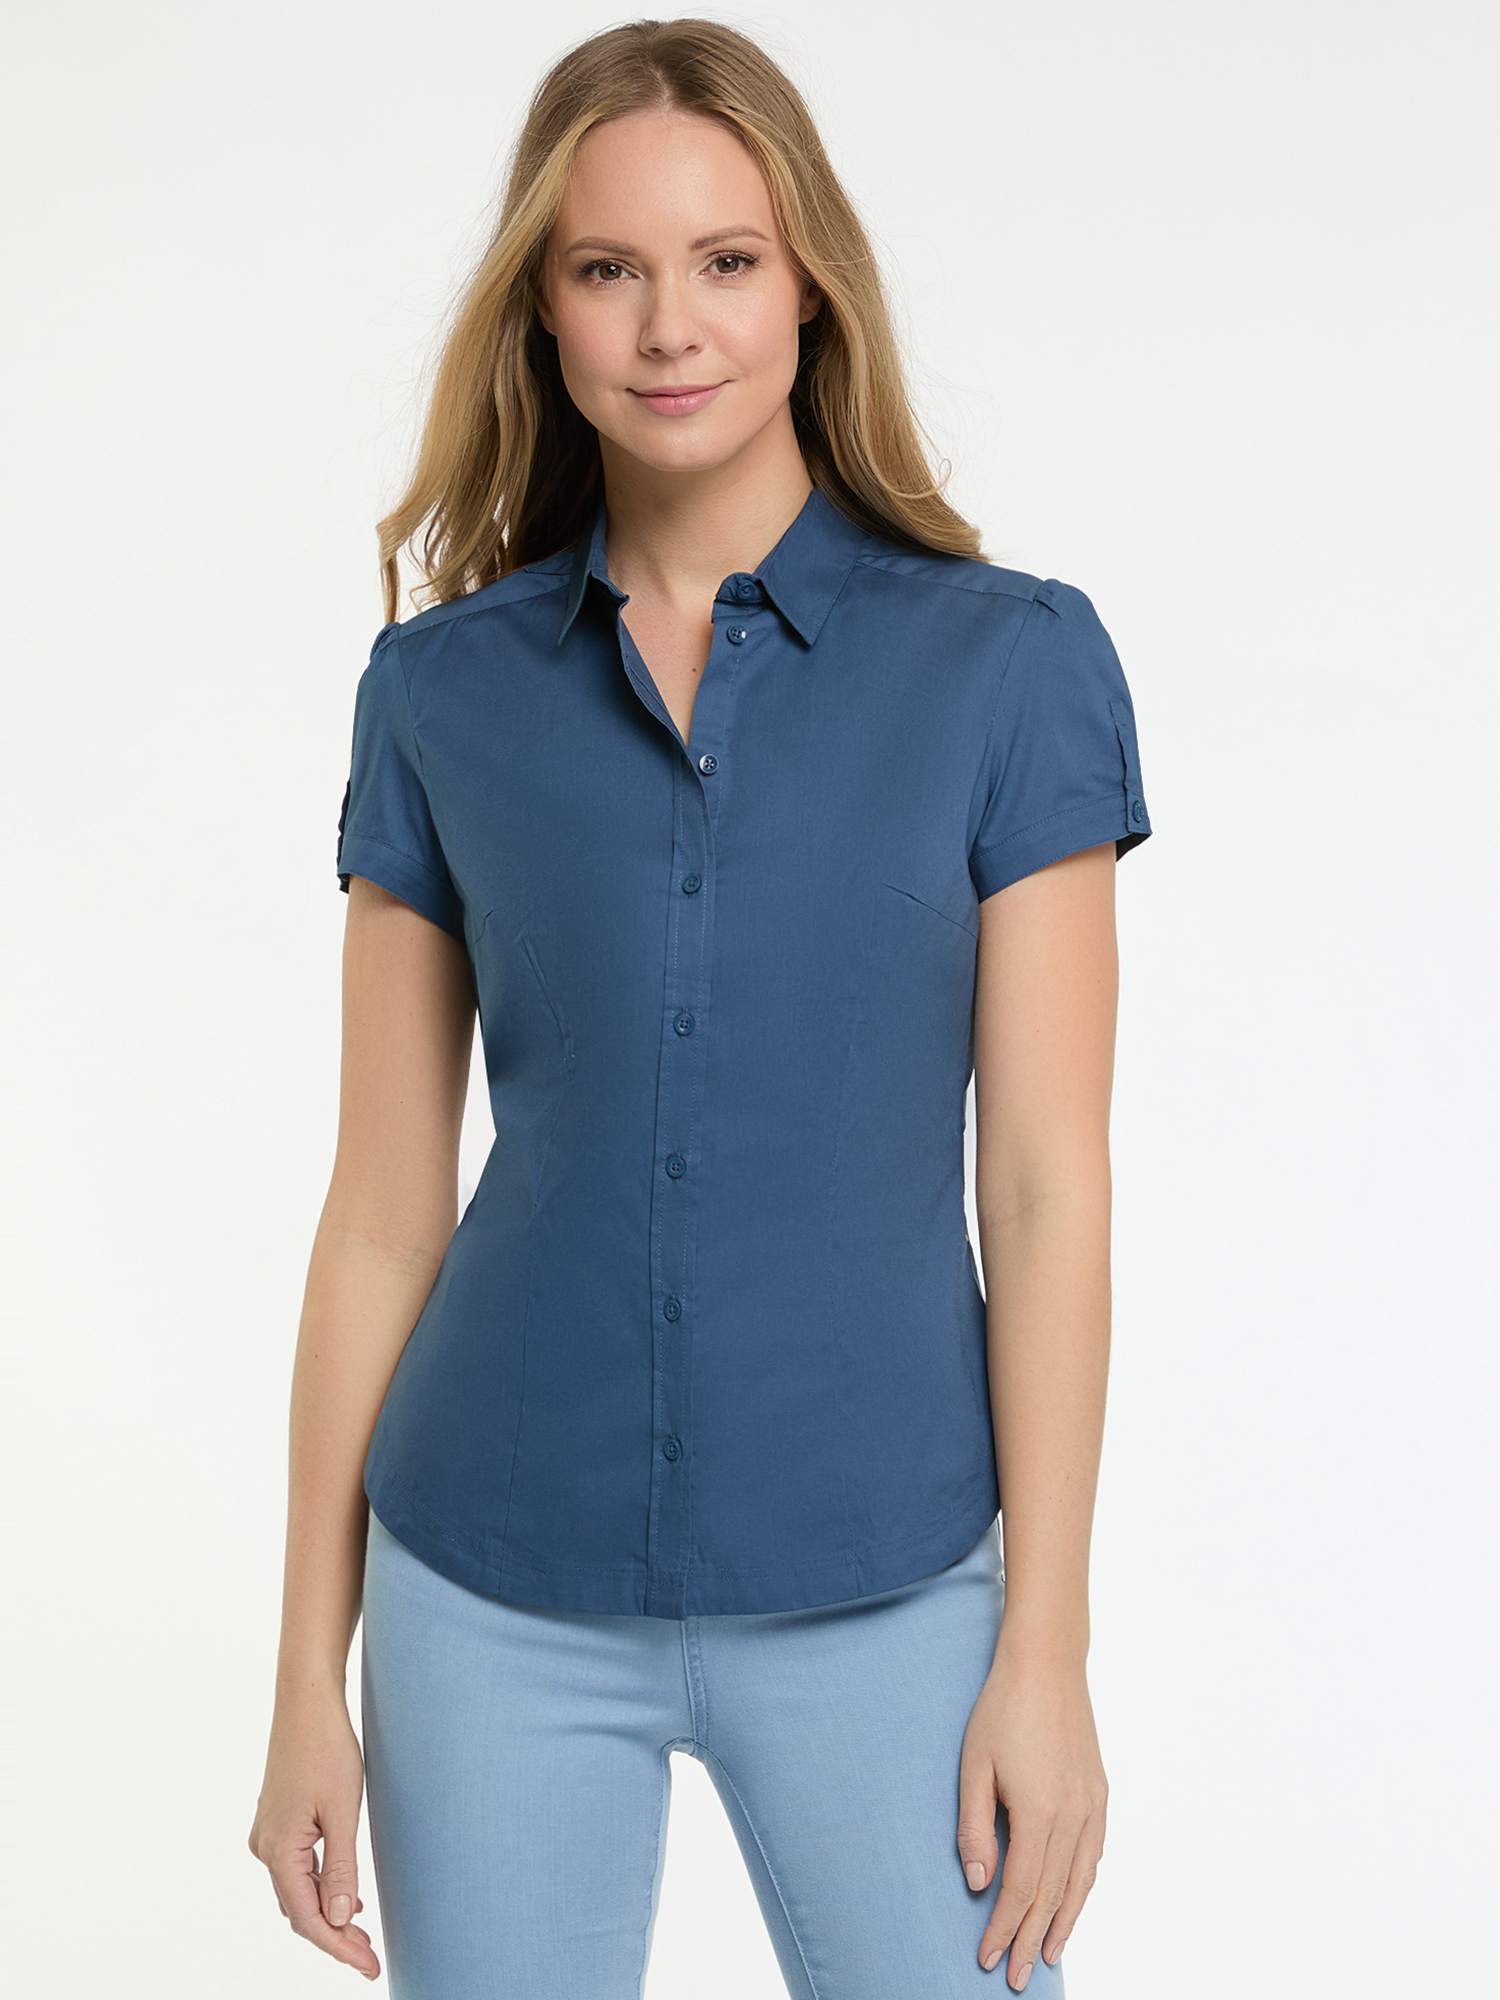 Рубашка женская oodji 13K01004-1B синяя 38 EU